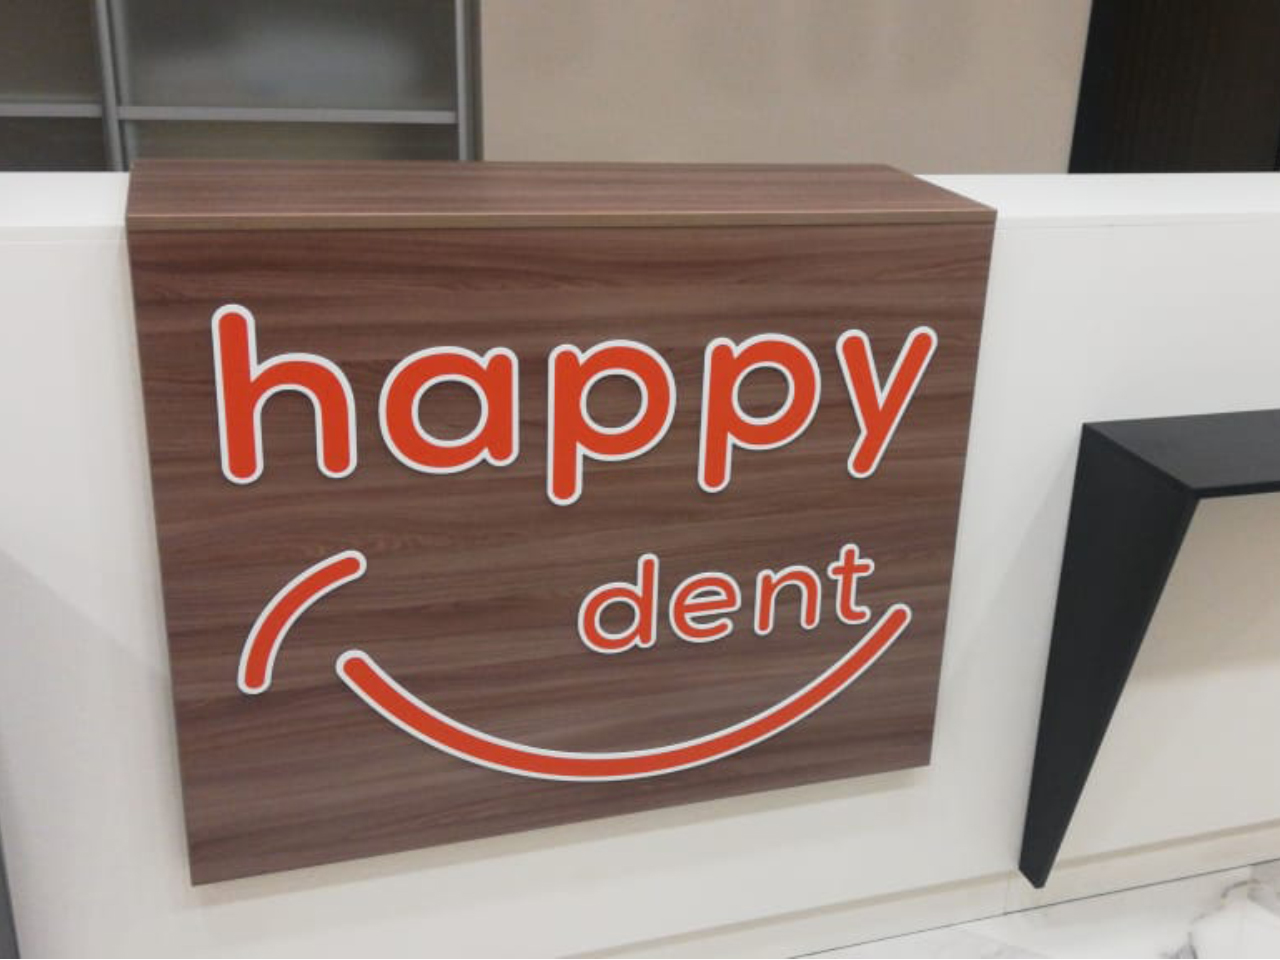 Вы сейчас просматриваете Разработка фирменного стиля для стоматологии Happy dent 